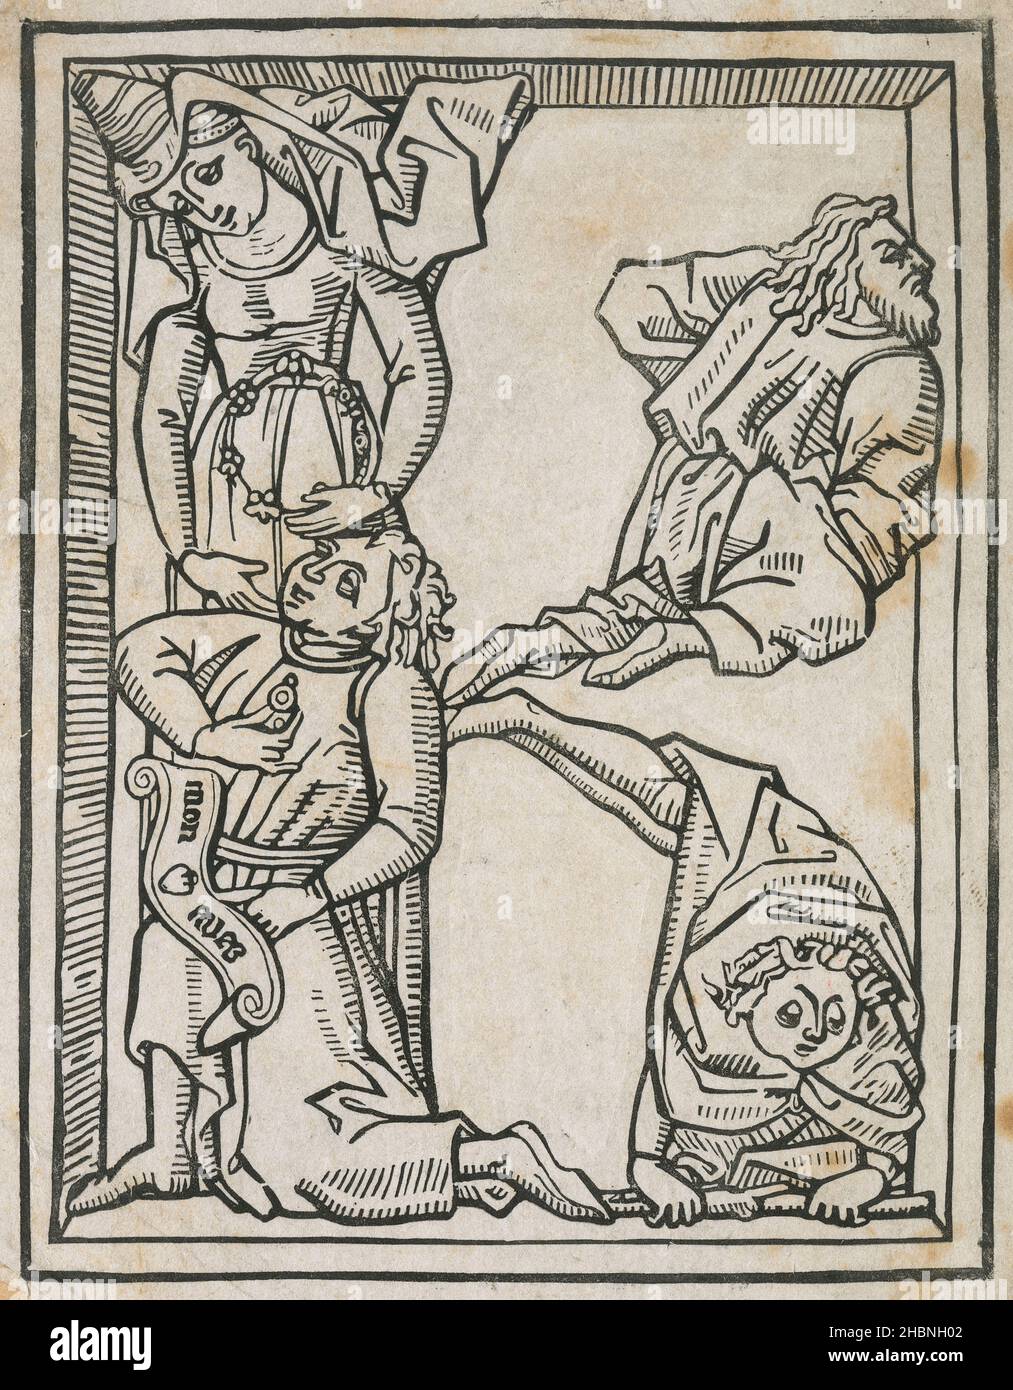 Incisione antica del 19th secolo, lettera disegnata a mano del 15th secolo. FONTE: INCISIONE ORIGINALE Foto Stock